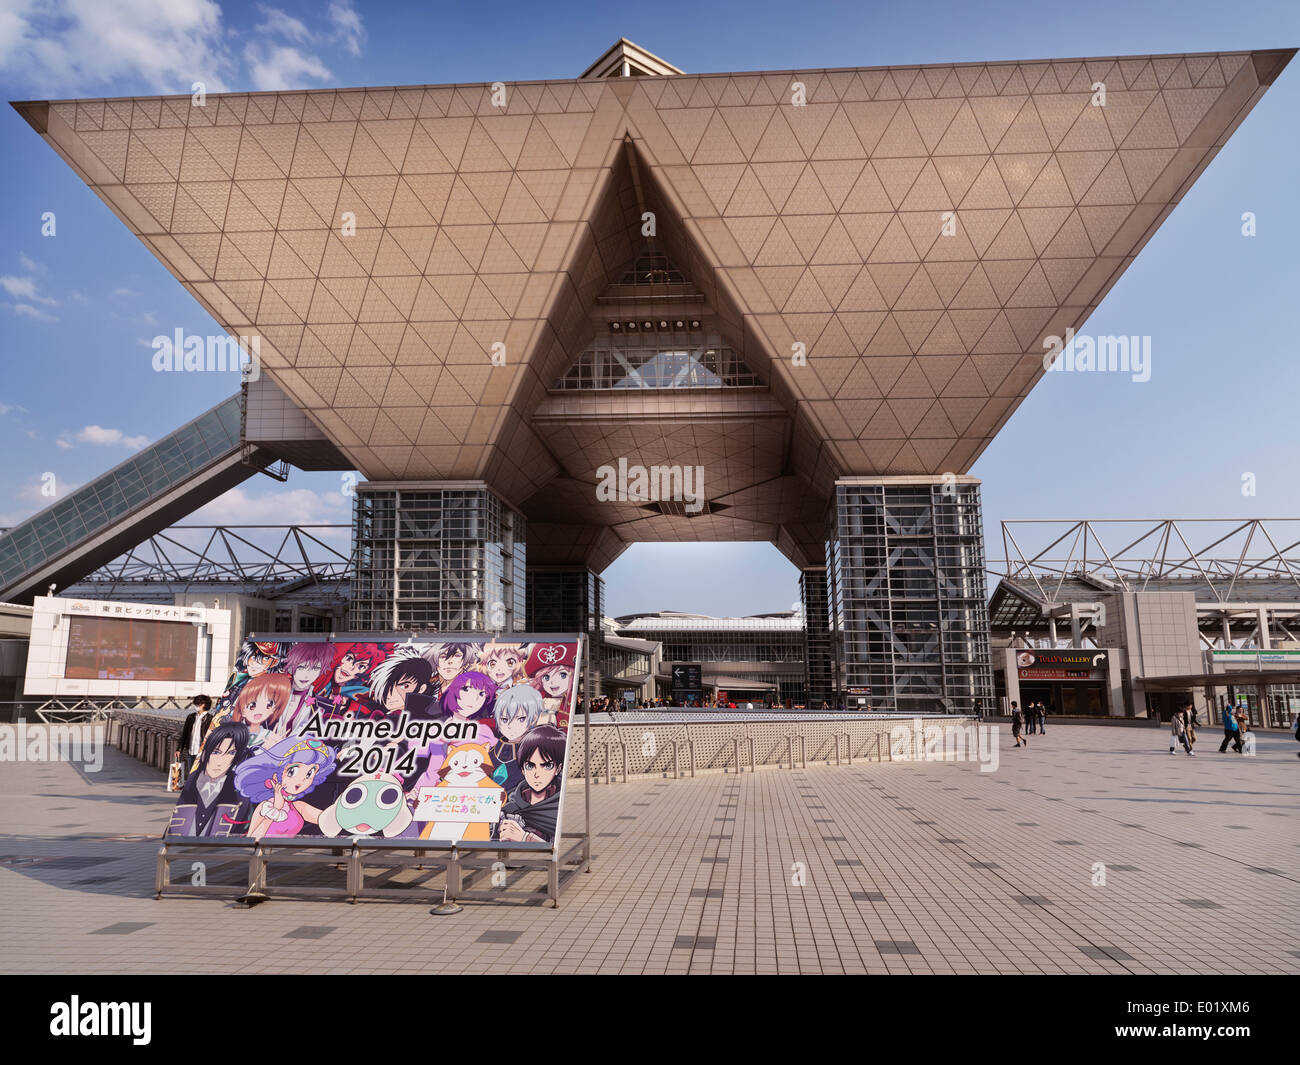 Tokyo Big Sight Exhibition Centre au cours de 2014 Anime. Ariake, Tokyo, Japon. Banque D'Images